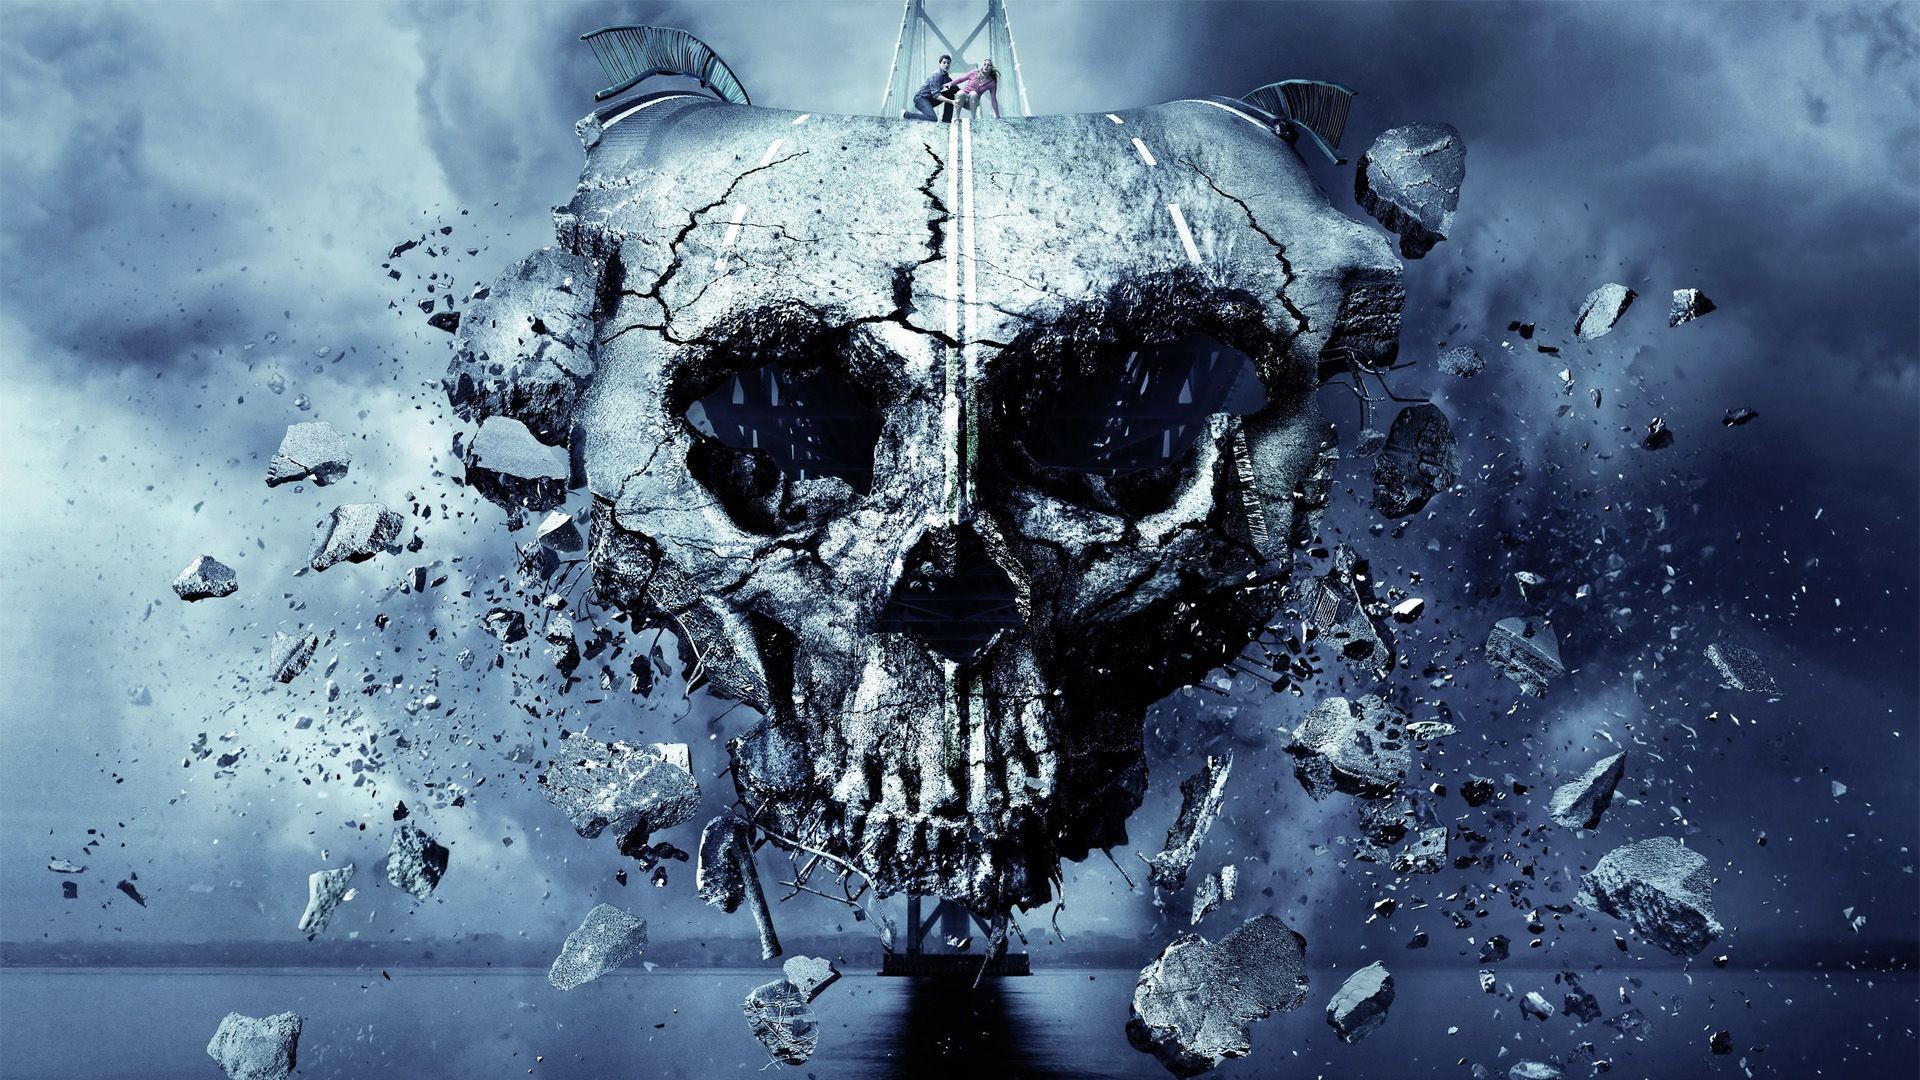 Final Destination 5 Dark Skull Skulls Horror Wallpaper - Cool Wallpapers Hd  1080p - 1920x1080 Wallpaper 